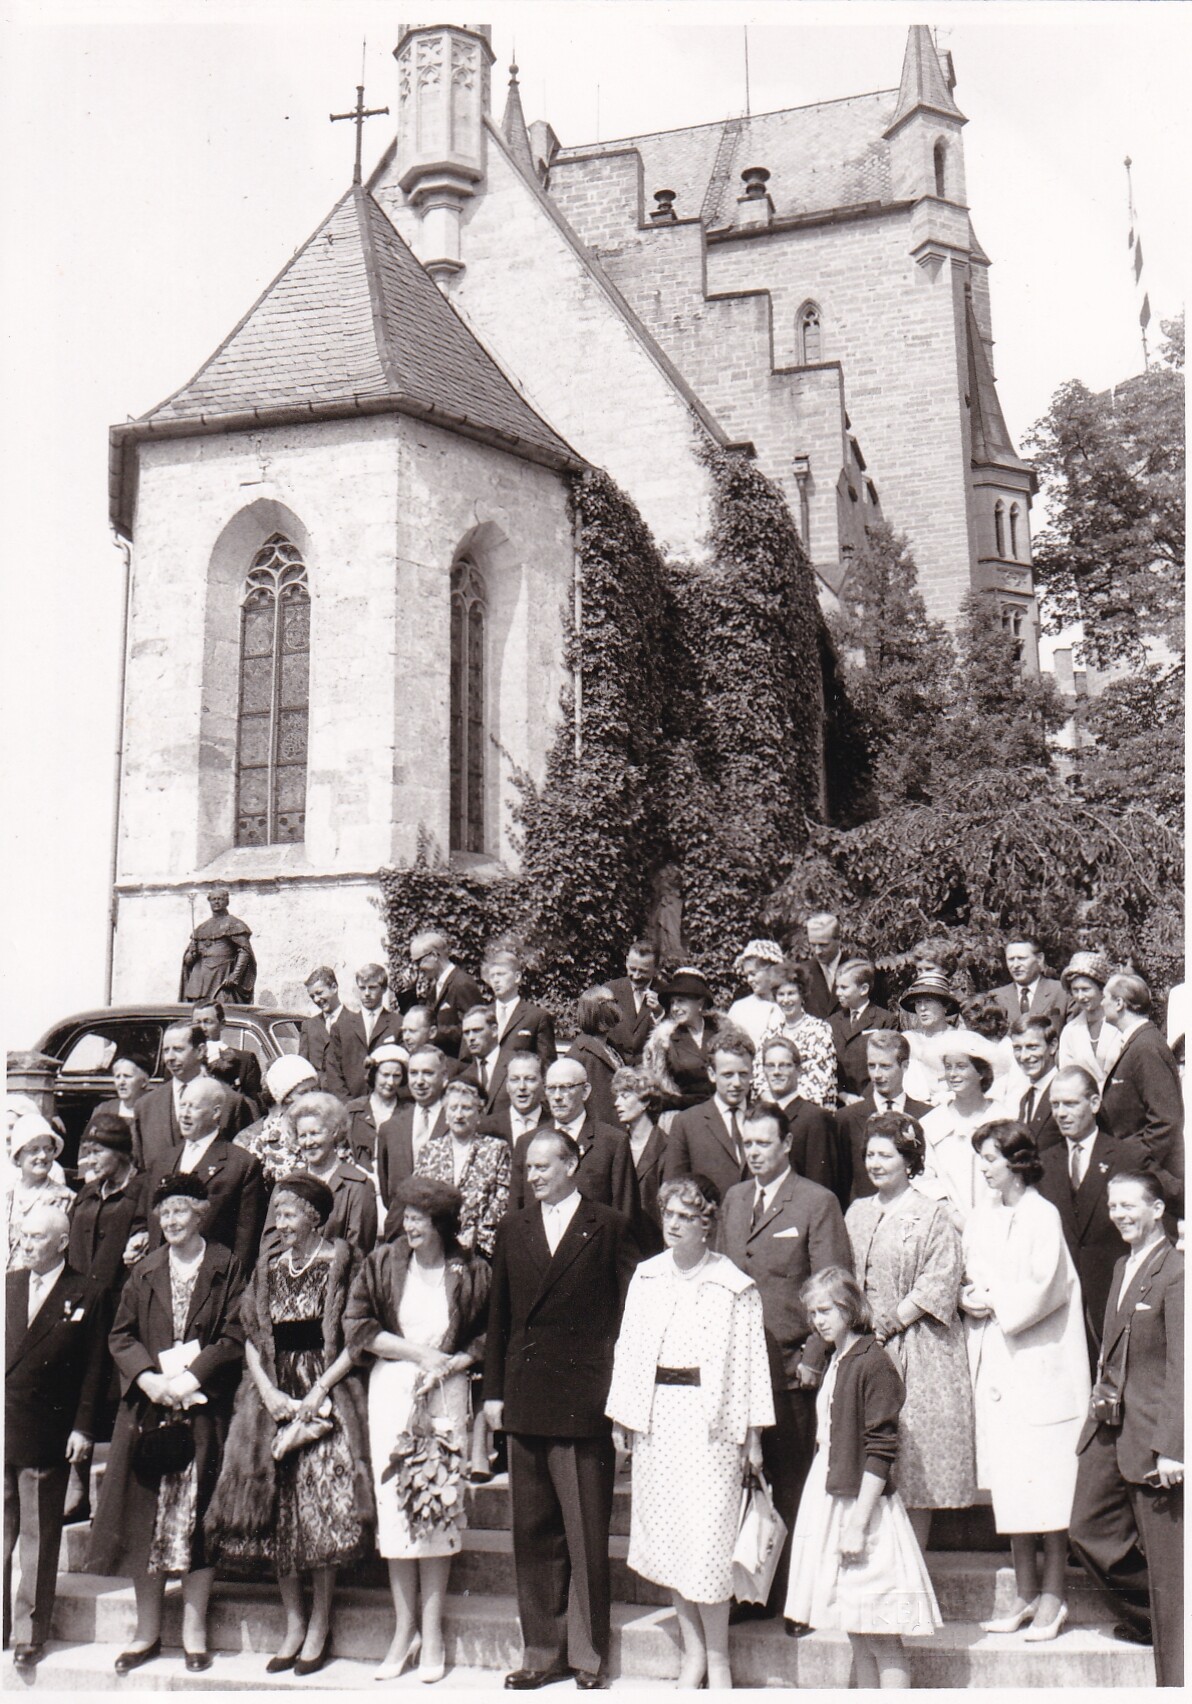 Bildpostkarte mit Foto vom Familientreffen zum 900-jährigen Bestehen des Hauses Hohenzollern auf der Burg Hohenzollern, 22.07.1961 (Schloß Wernigerode GmbH RR-F)